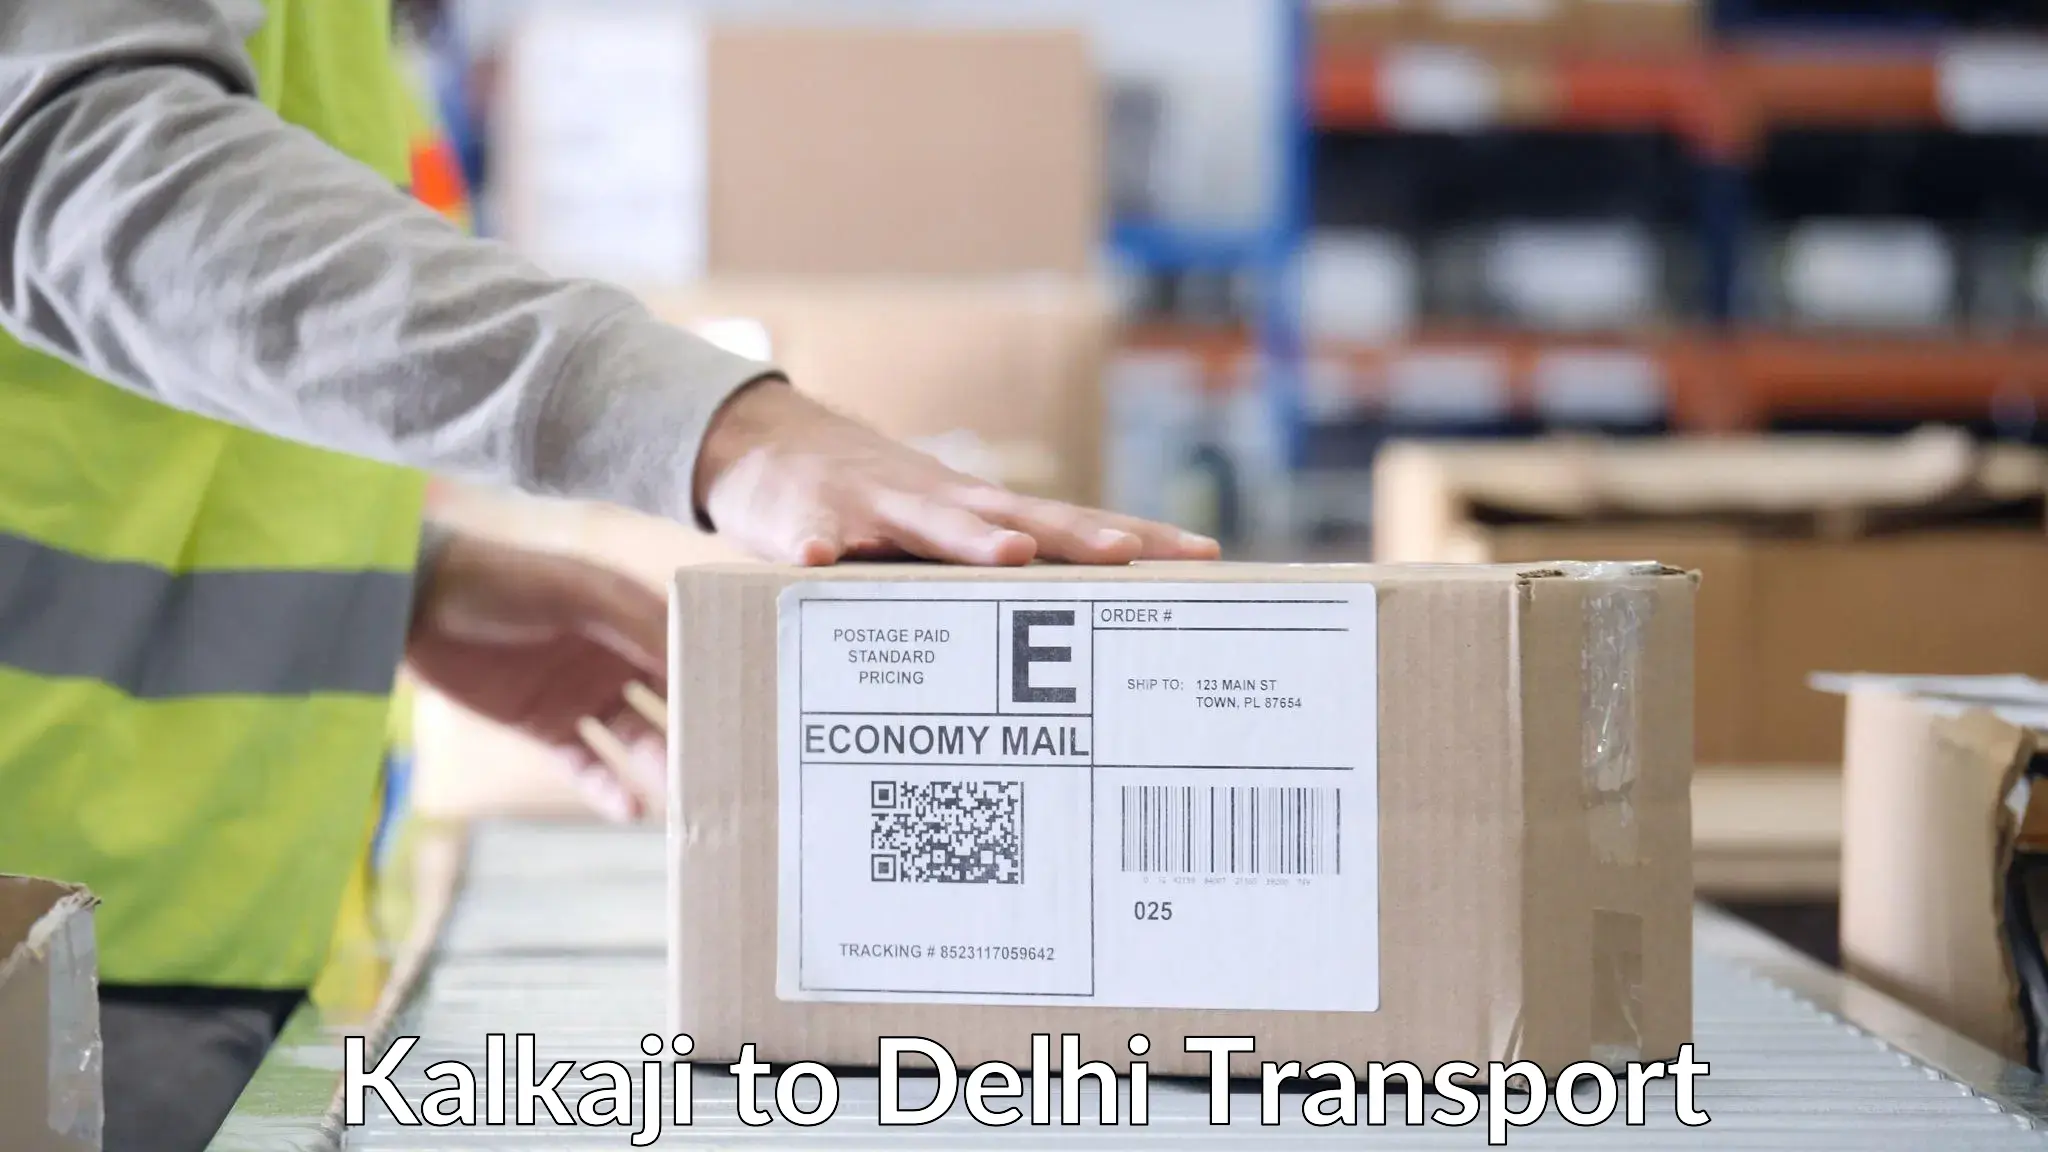 Pick up transport service Kalkaji to Delhi